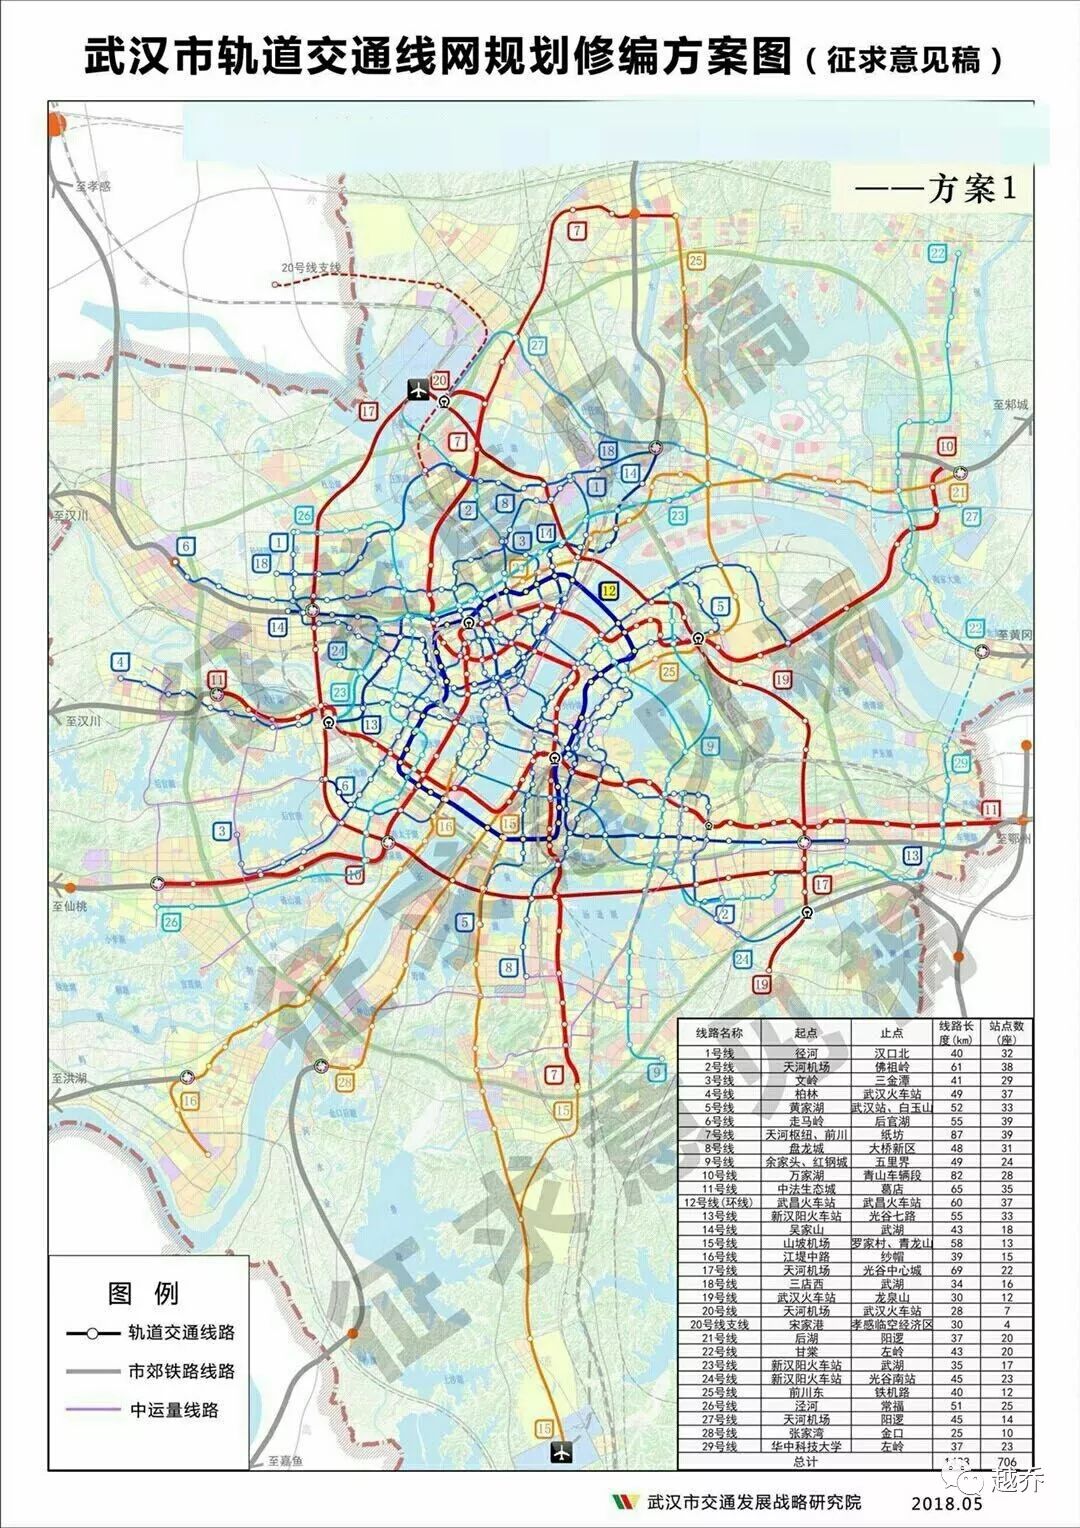 2018年9月7日 2049城市沙龙开幕 武汉地铁规划征集意见稿出炉 2018年